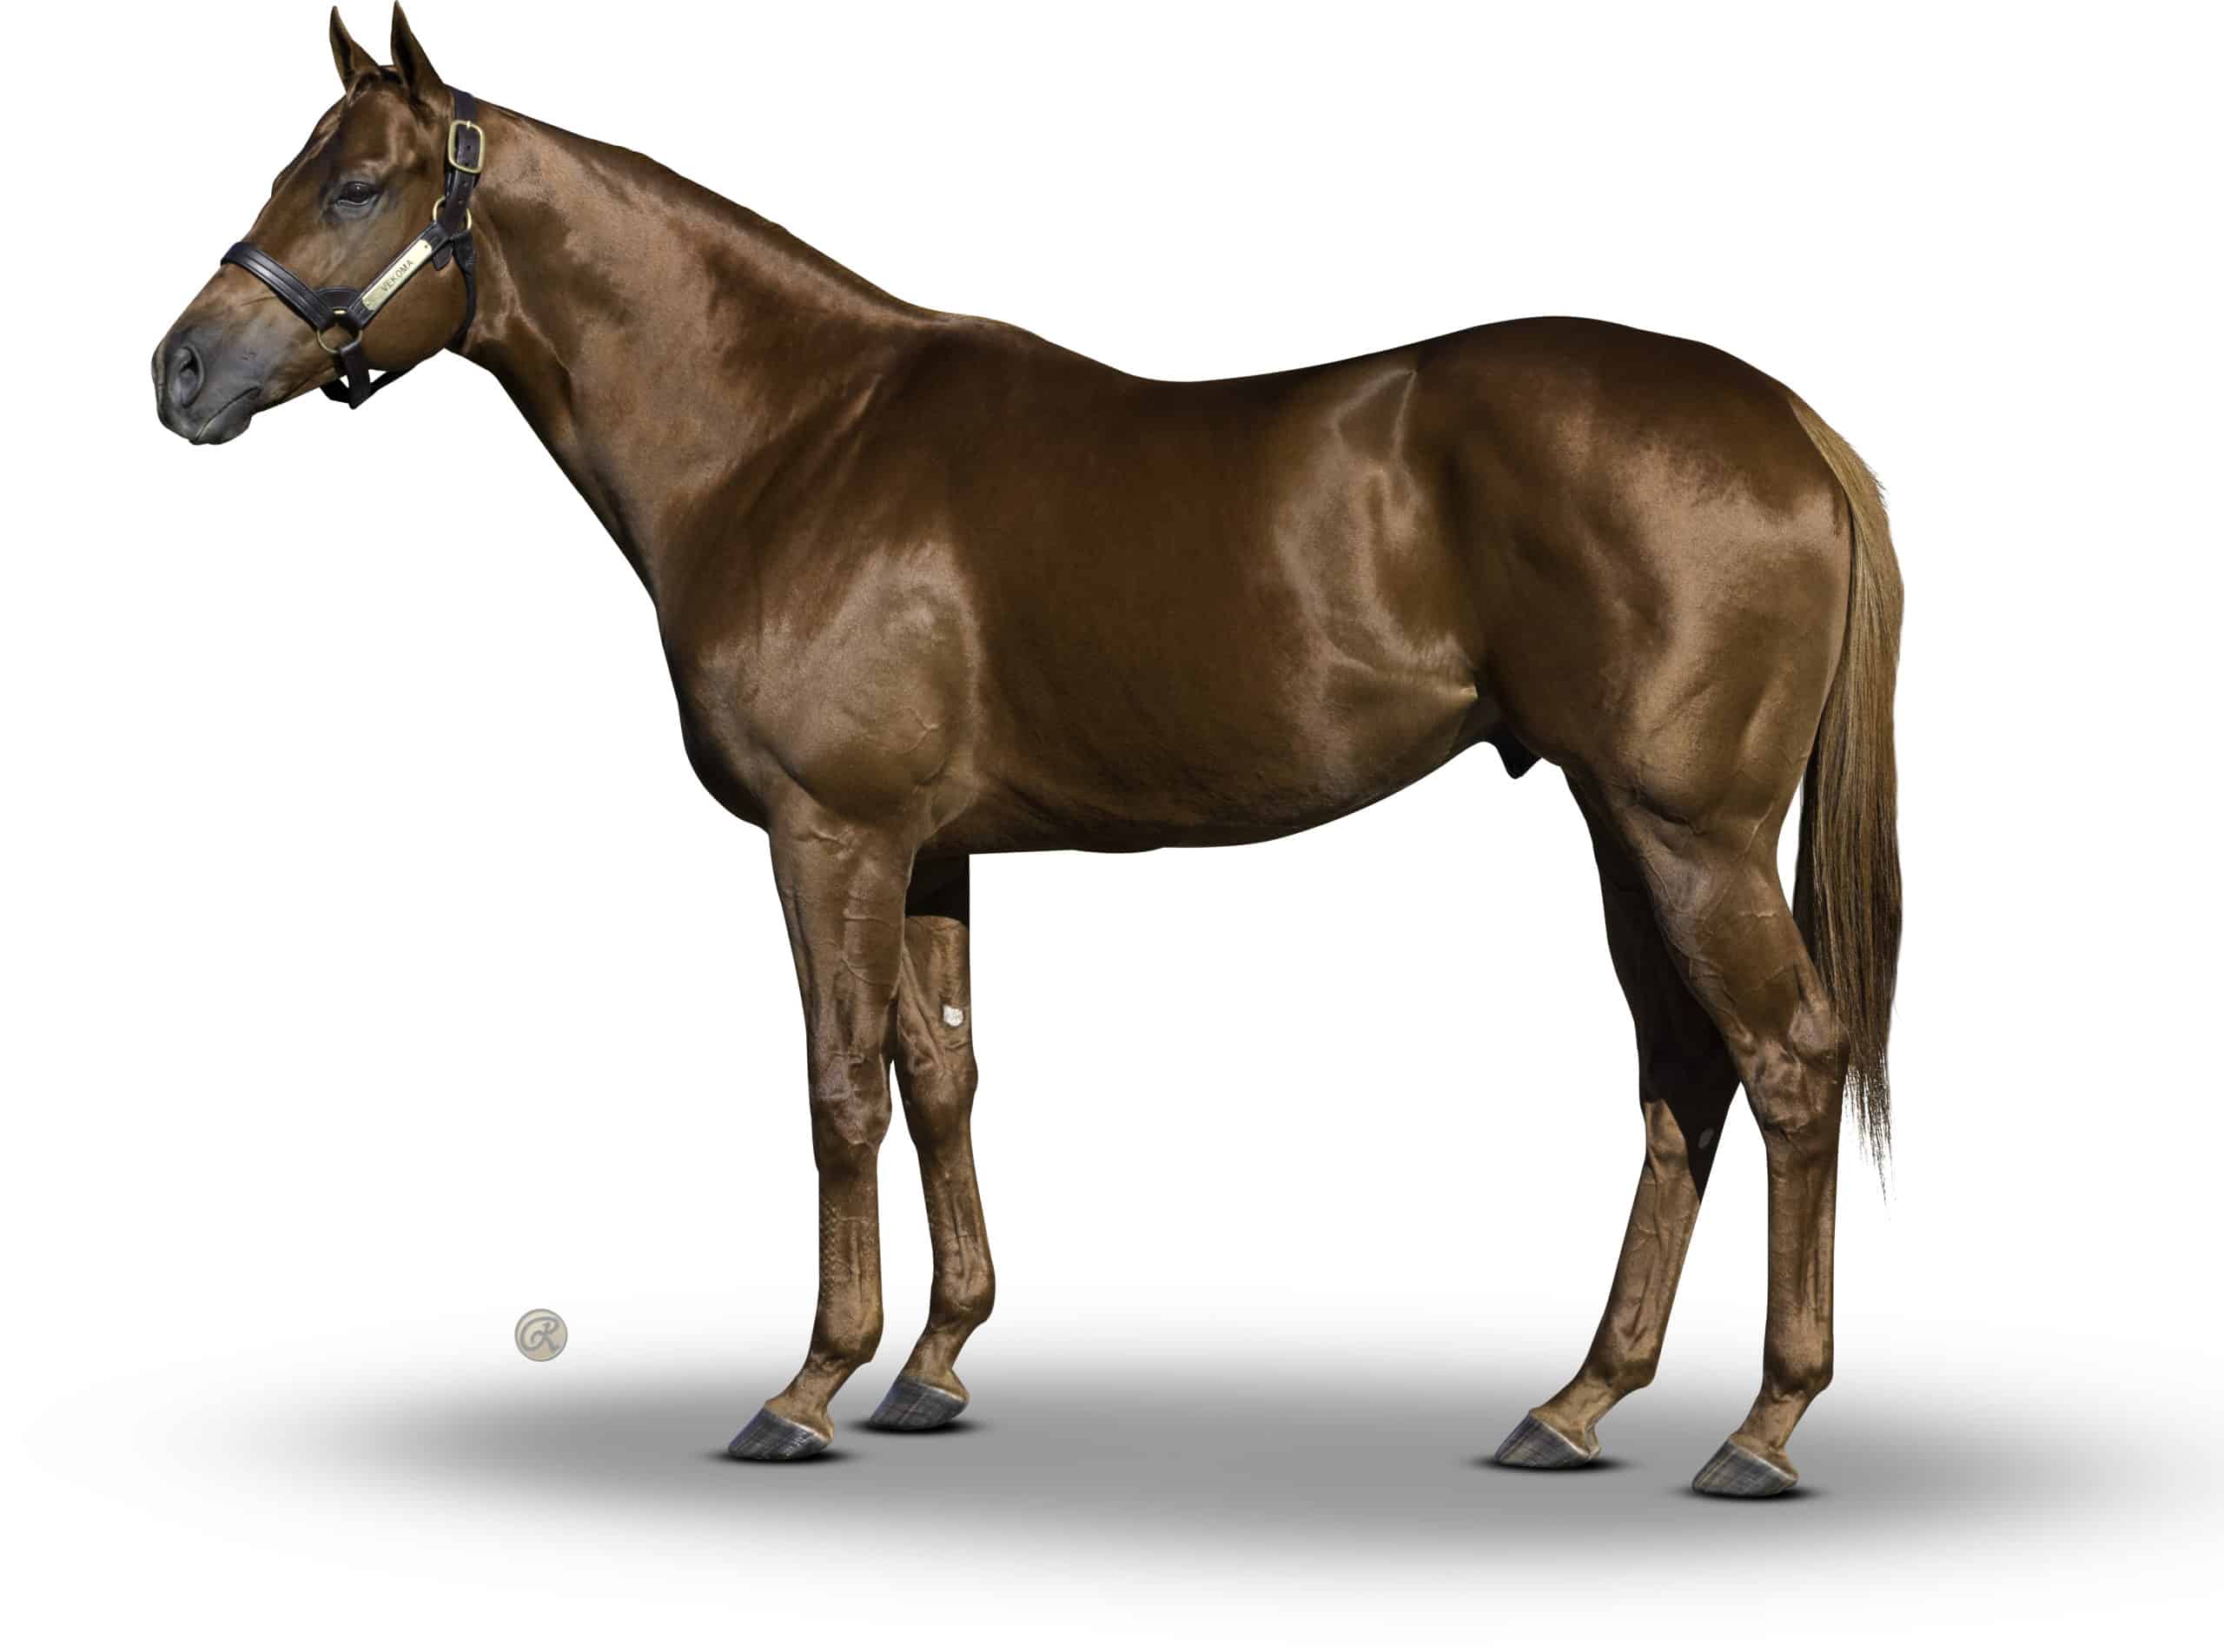 Vekoma - Thoroughbred Stallion at Spendthrift Farm, KY